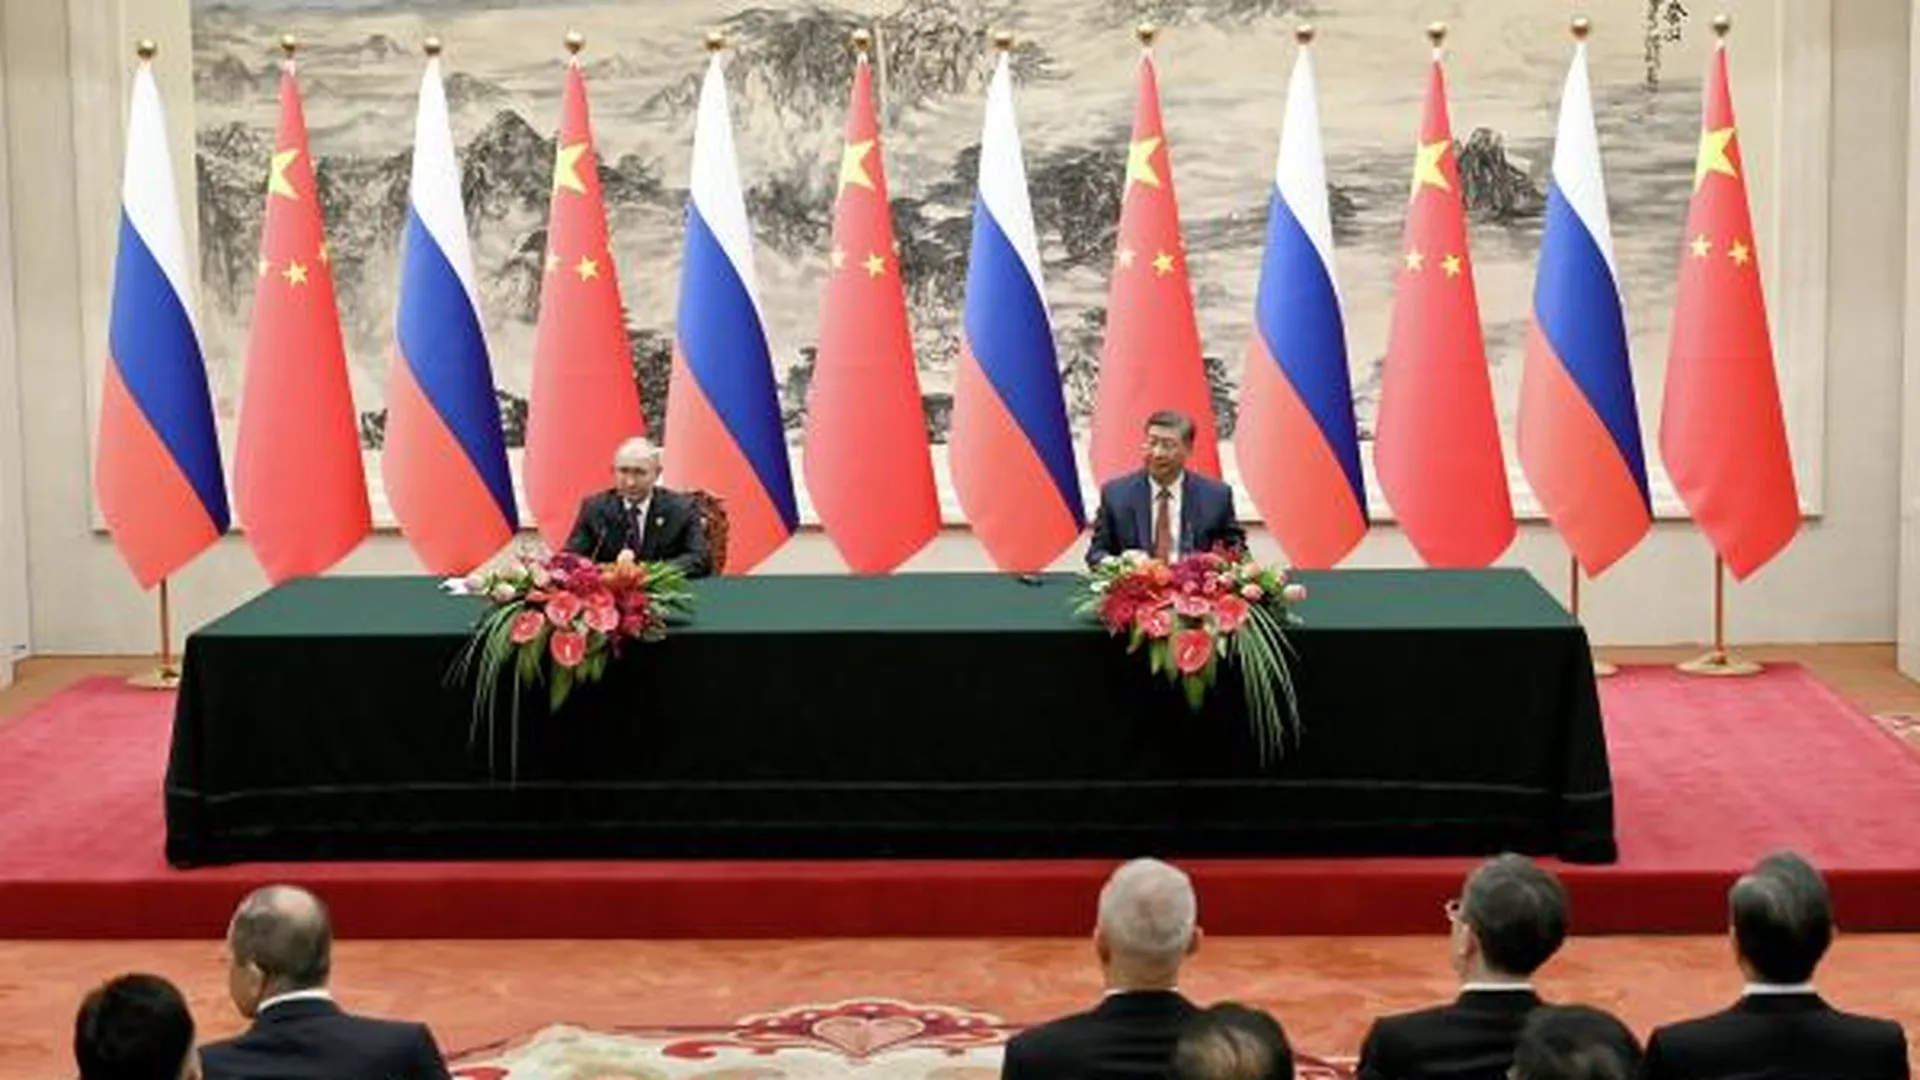 Дипломатический фэн-шуй. Стол переговоров Путина и Си Цзиньпина украсили антуриумами